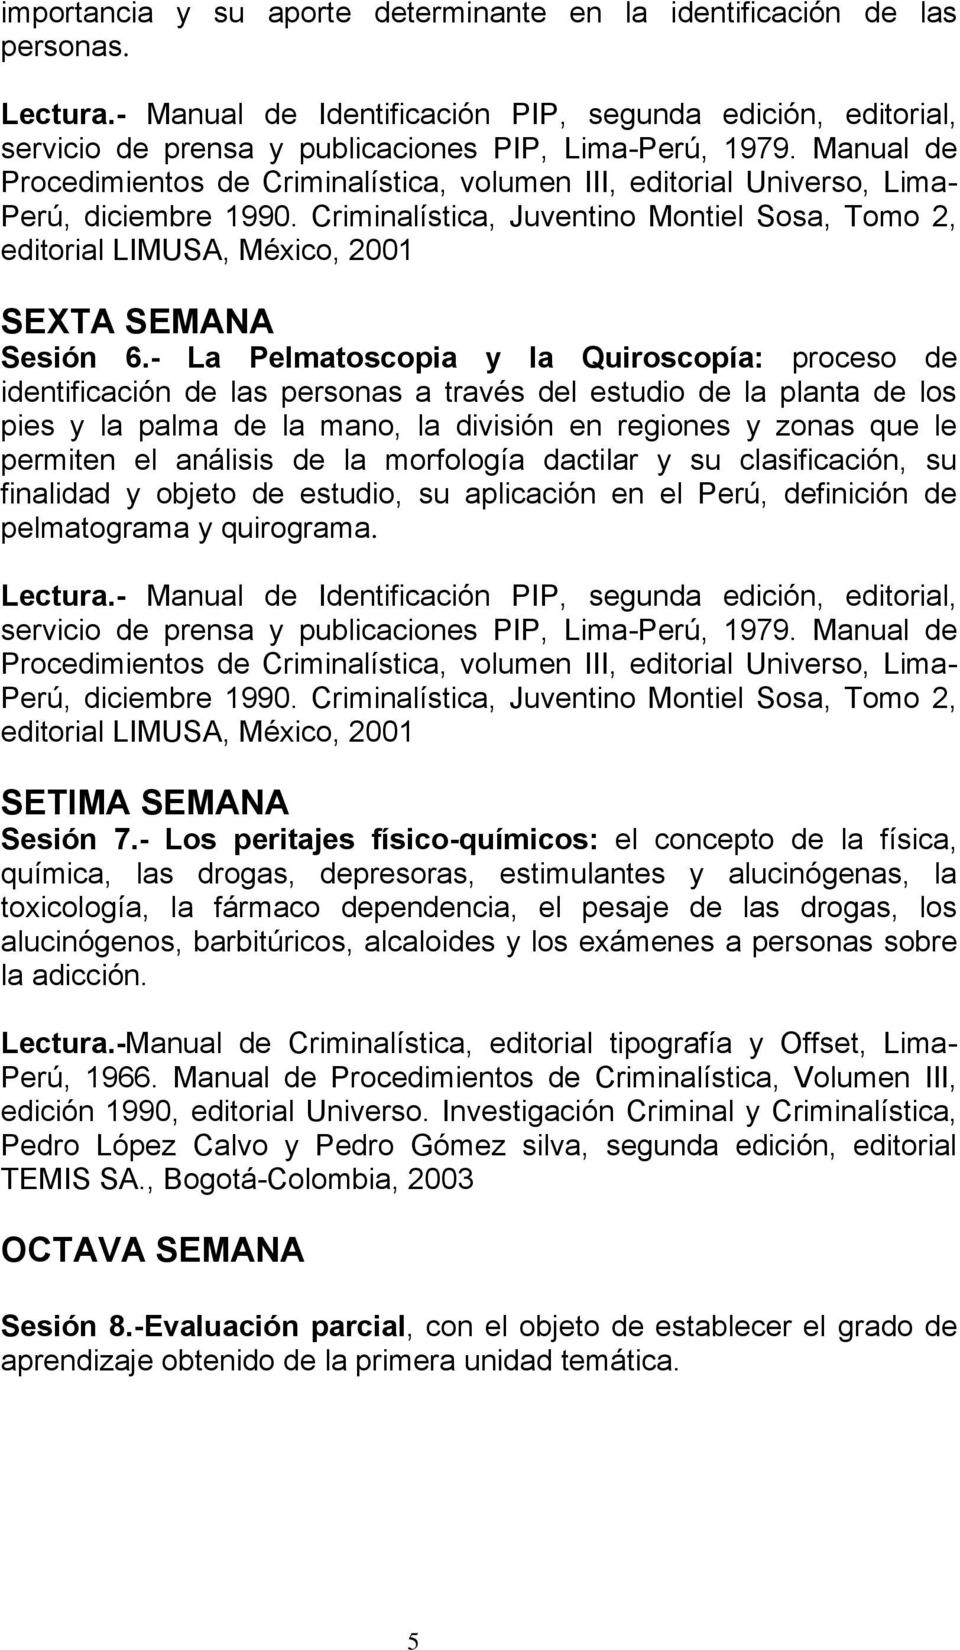 Criminalística, Juventino Montiel Sosa, Tomo 2, editorial LIMUSA, México, 2001 SEXTA SEMANA Sesión 6.